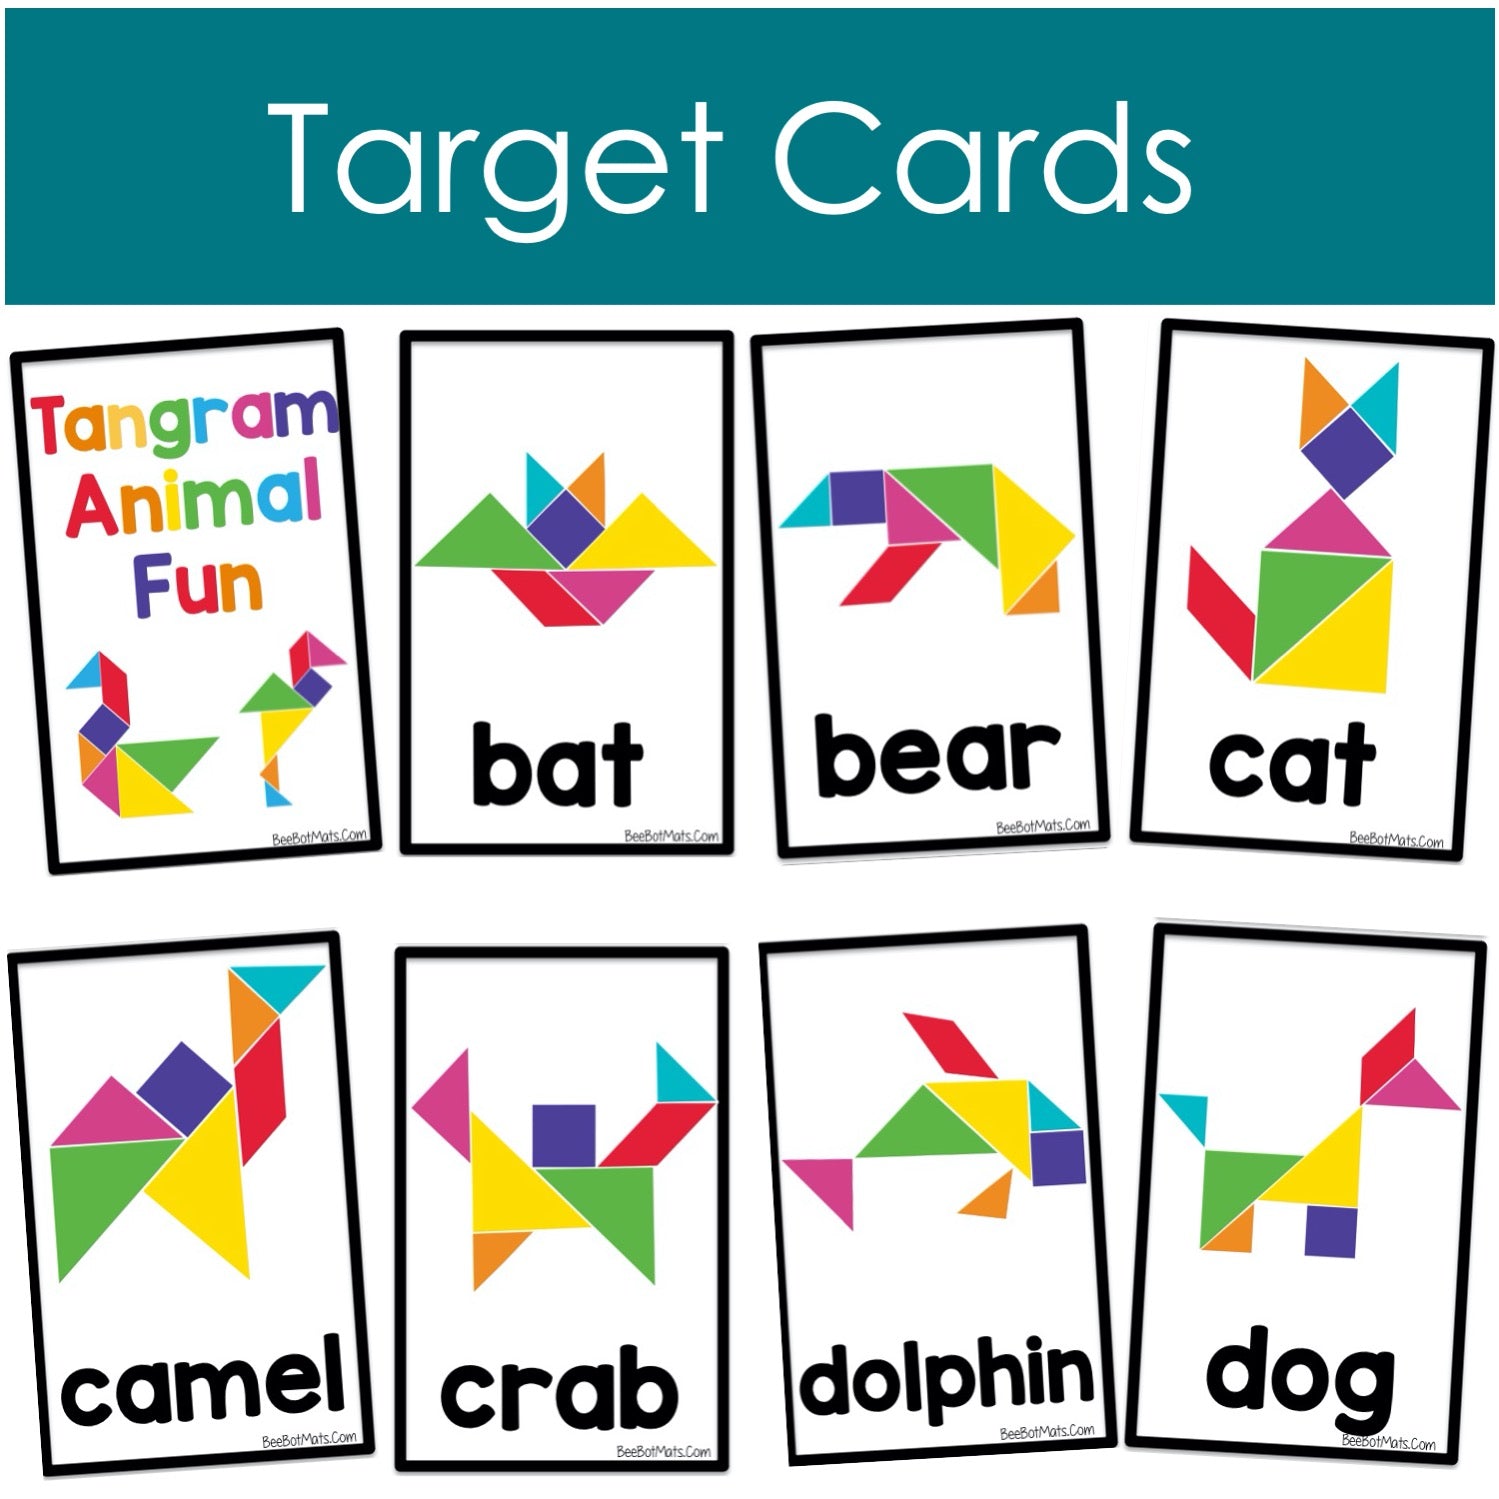 BeeBot Mat Tangram Animal Fun Target Cards